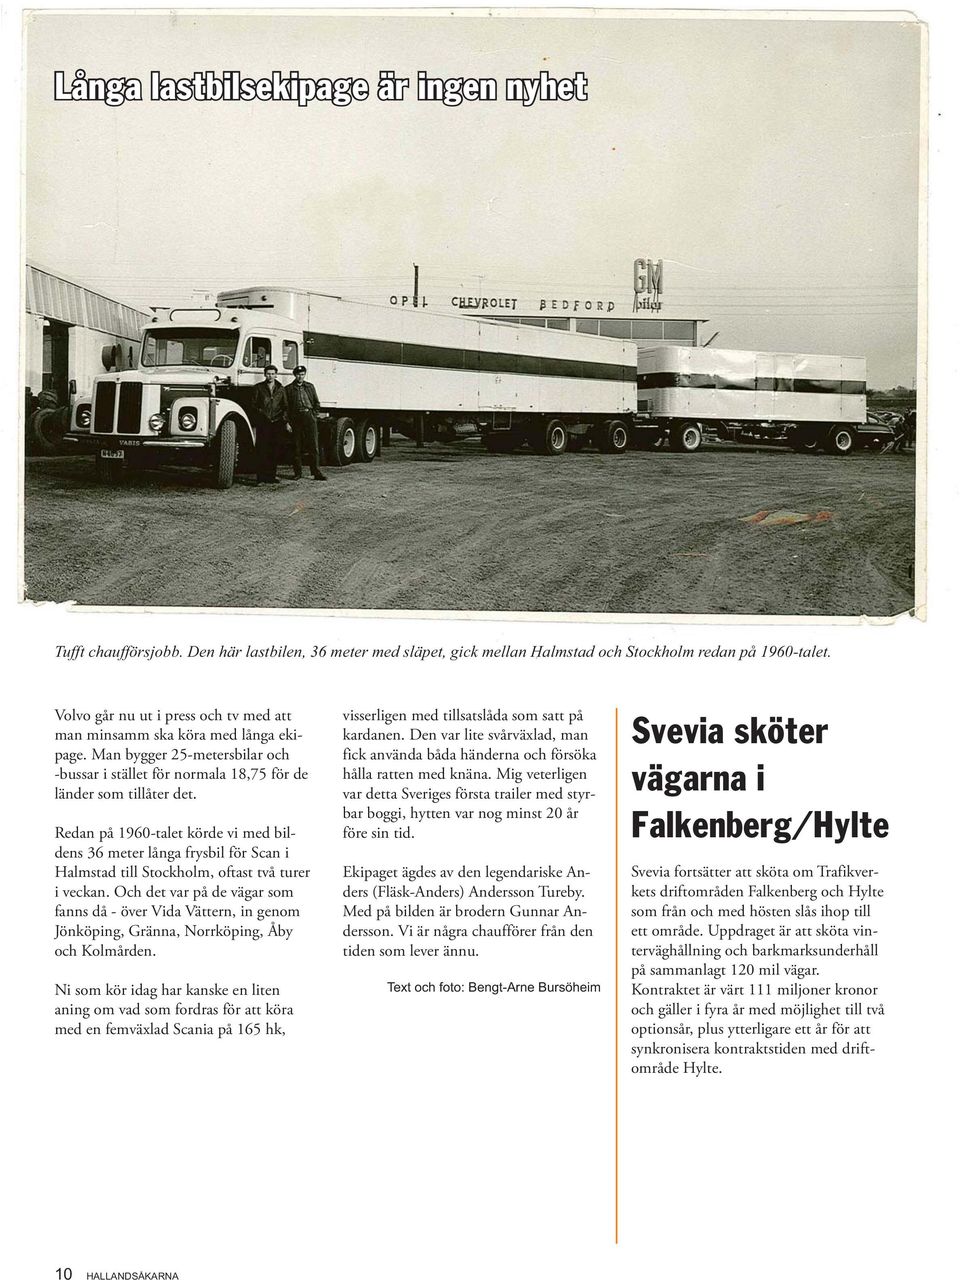 Redan på 1960-talet körde vi med bildens 36 meter långa frysbil för Scan i Halmstad till Stockholm, oftast två turer i veckan.